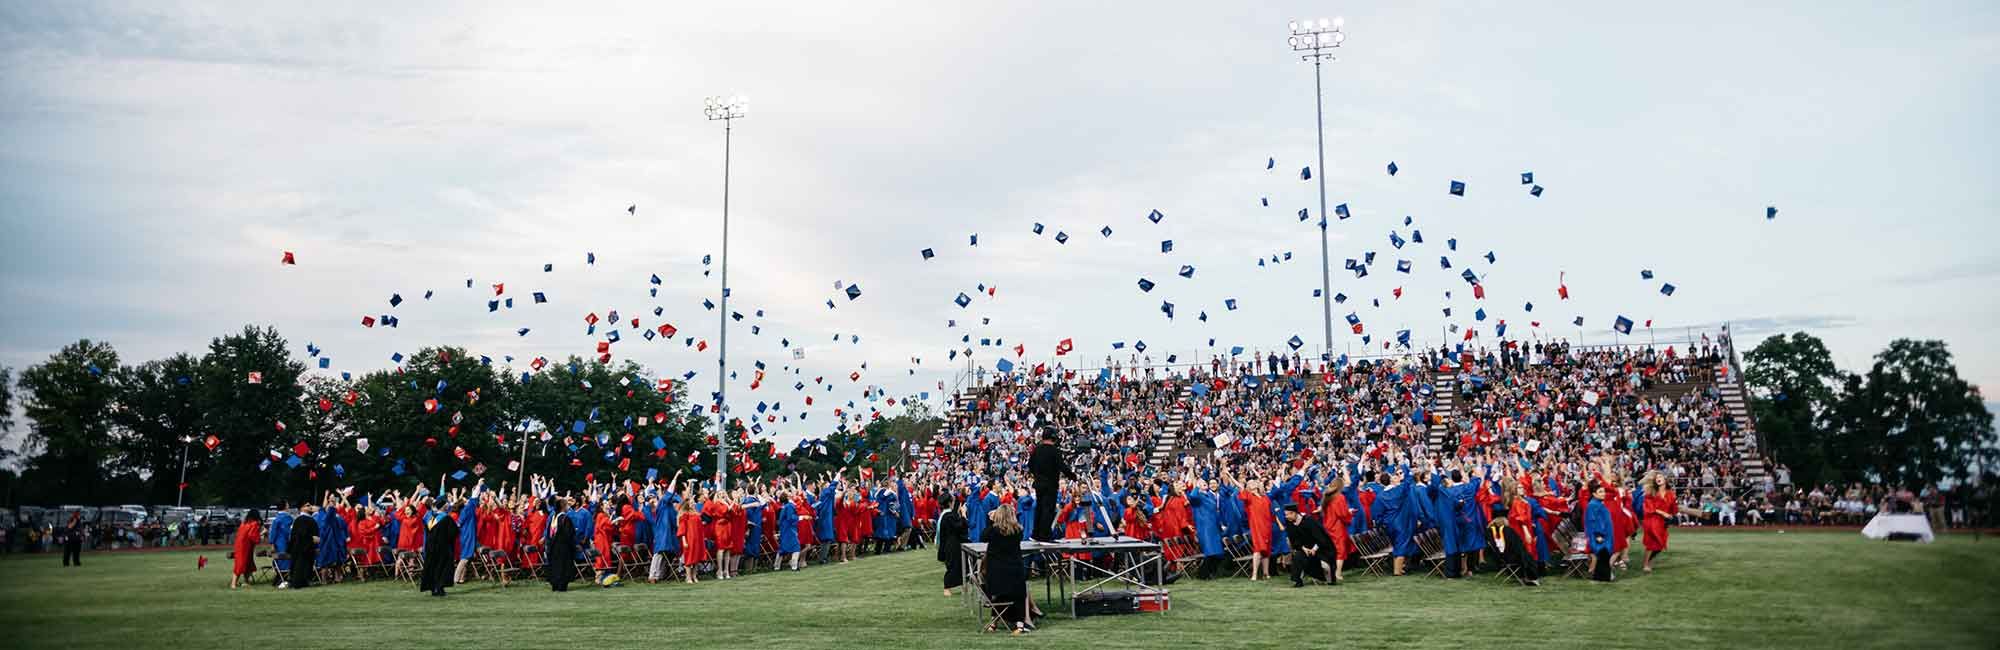  studenci wyrzucają czapki w dniu ukończenia studiów na boisku uniwersyteckim